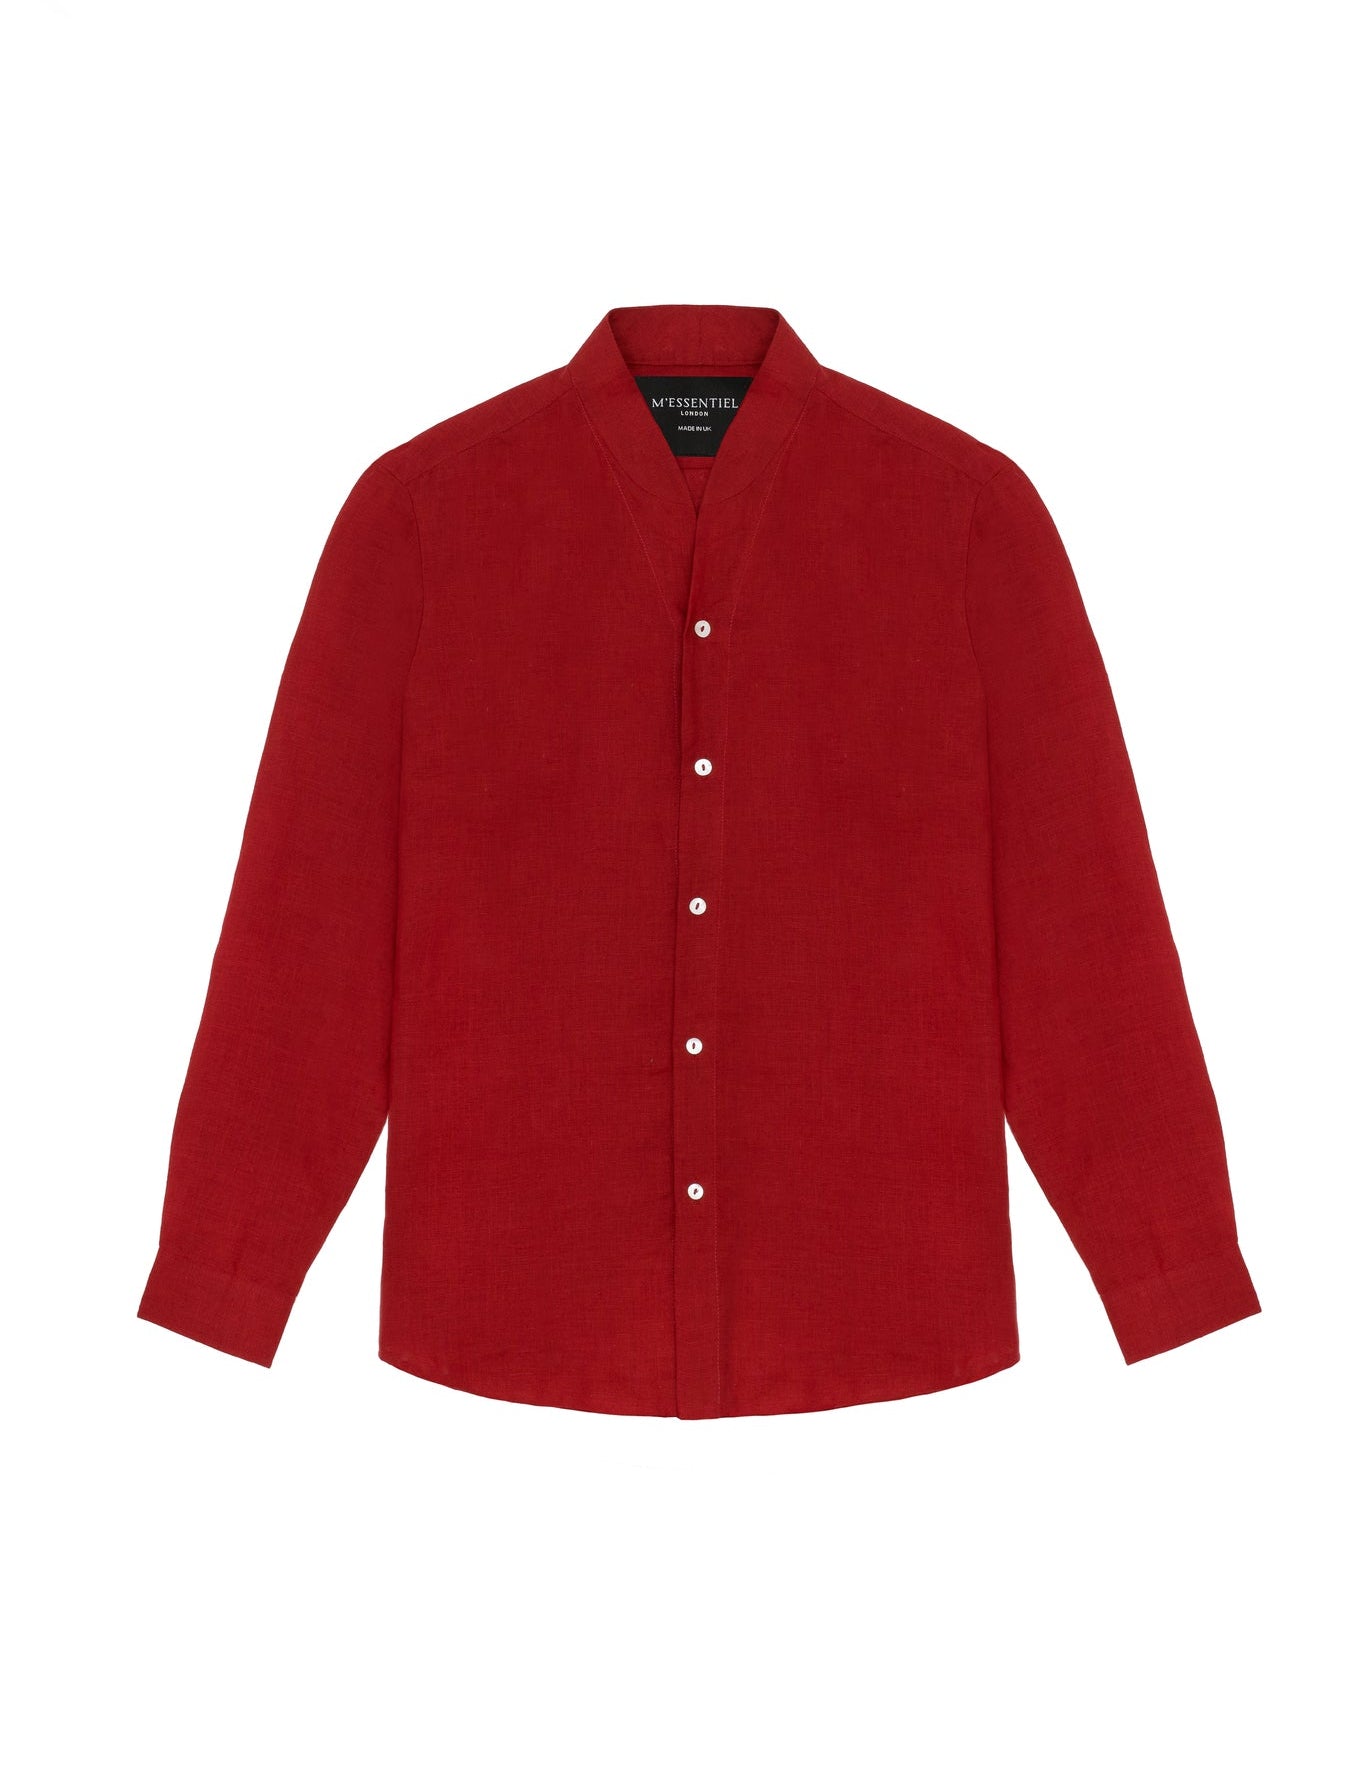 dark-red-mens-linen-shirt_f546fd41-e7d4-45b0-9fb9-7449771e9132.jpg